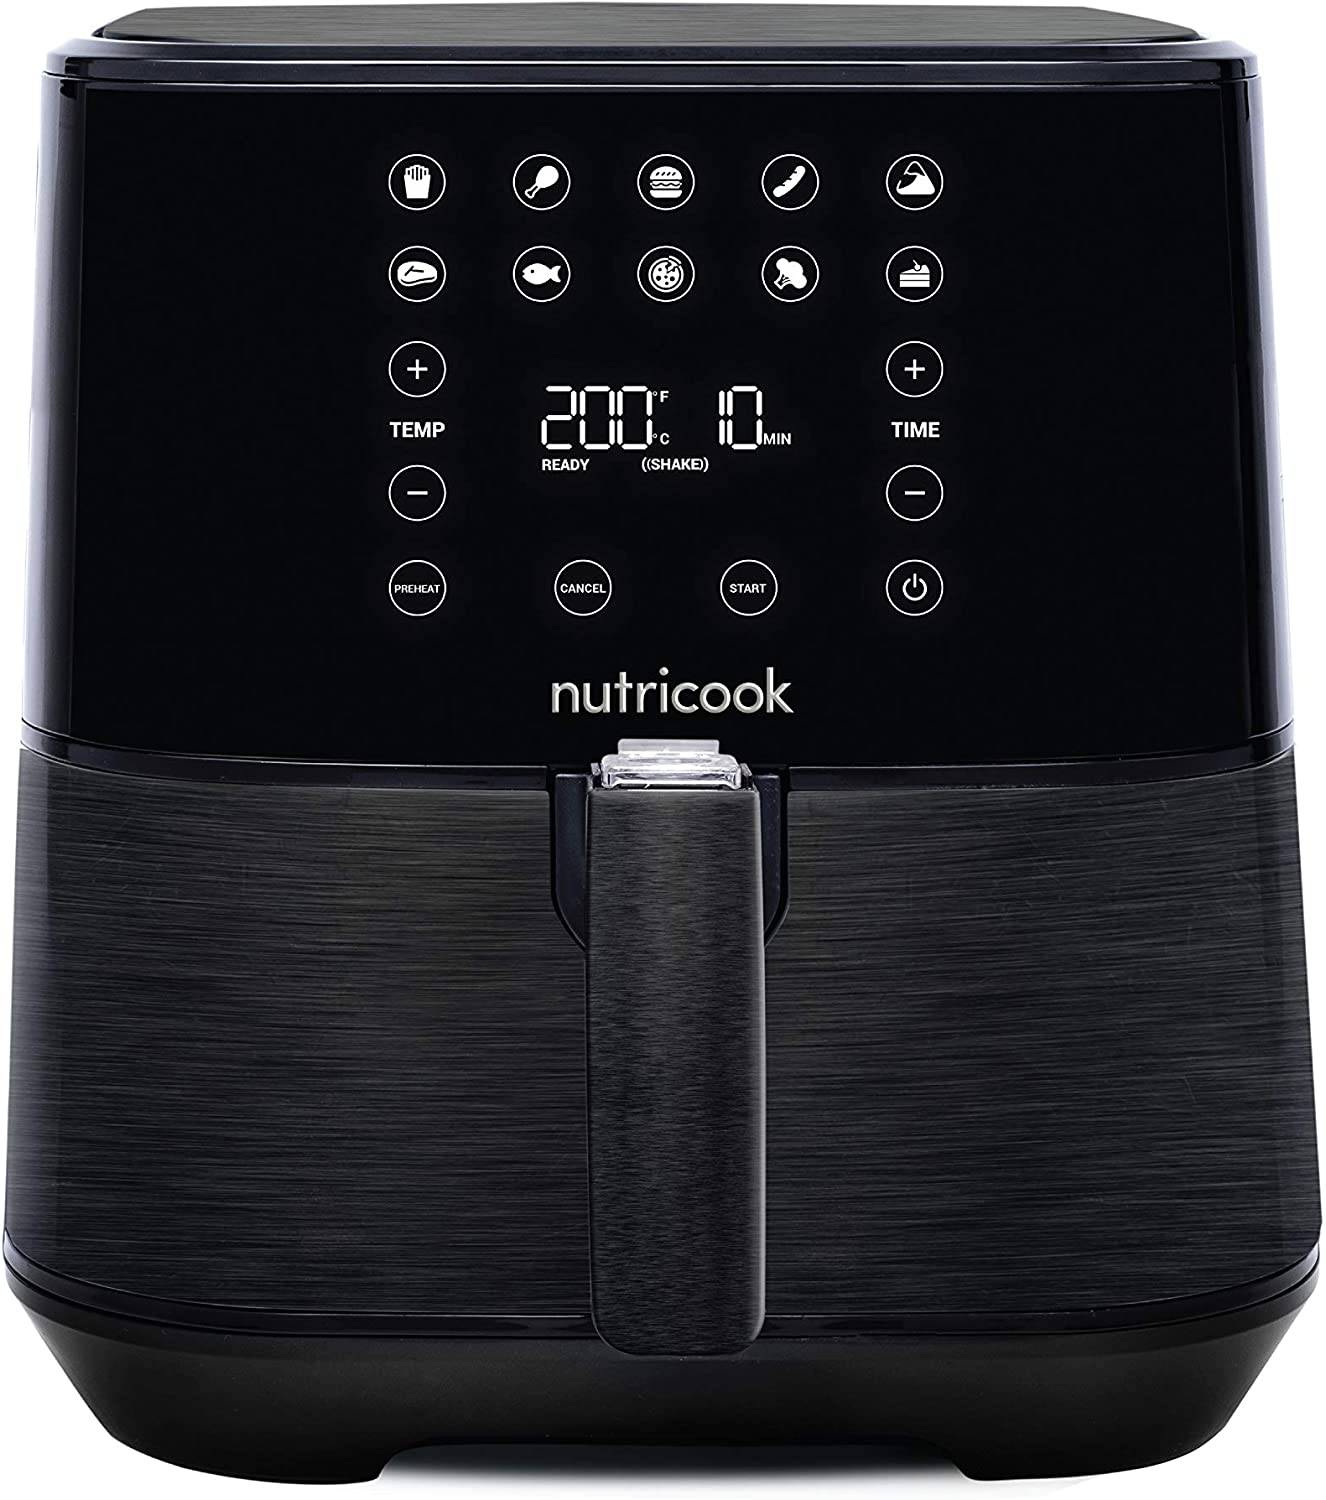 Nutricook Rapid AirfryeR2 / traditional deep fryer 5.5L -  Black